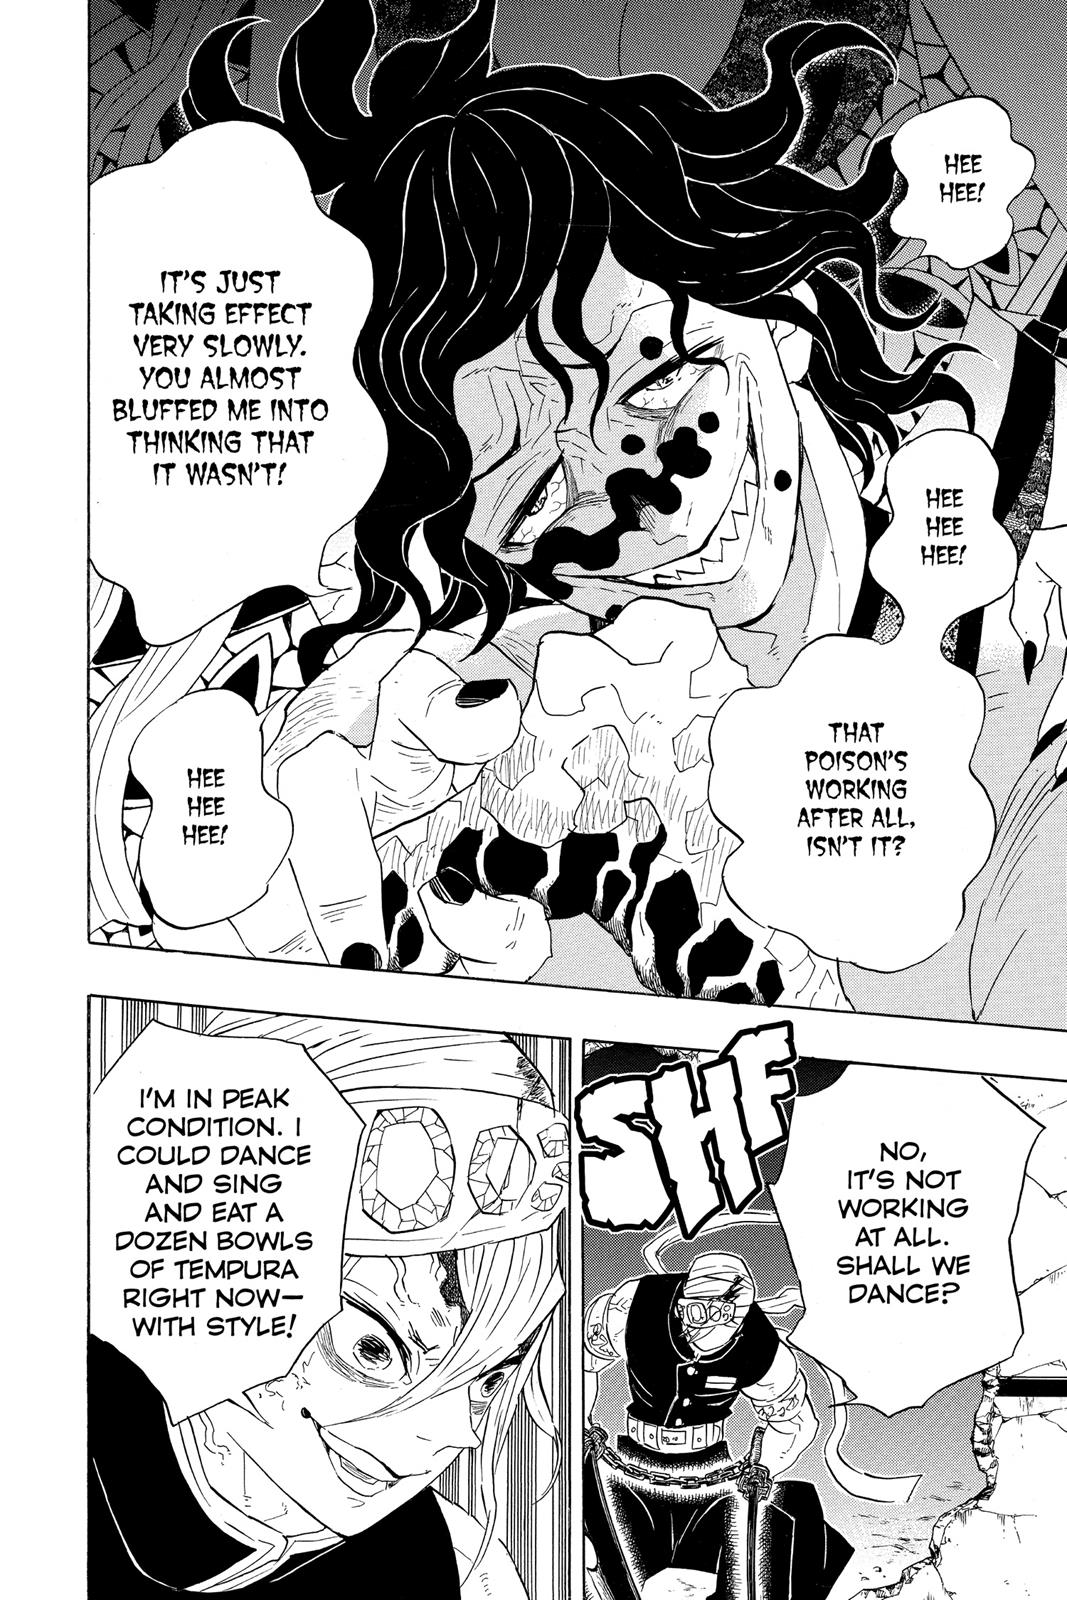 Demon Slayer Manga Manga Chapter - 87 - image 5